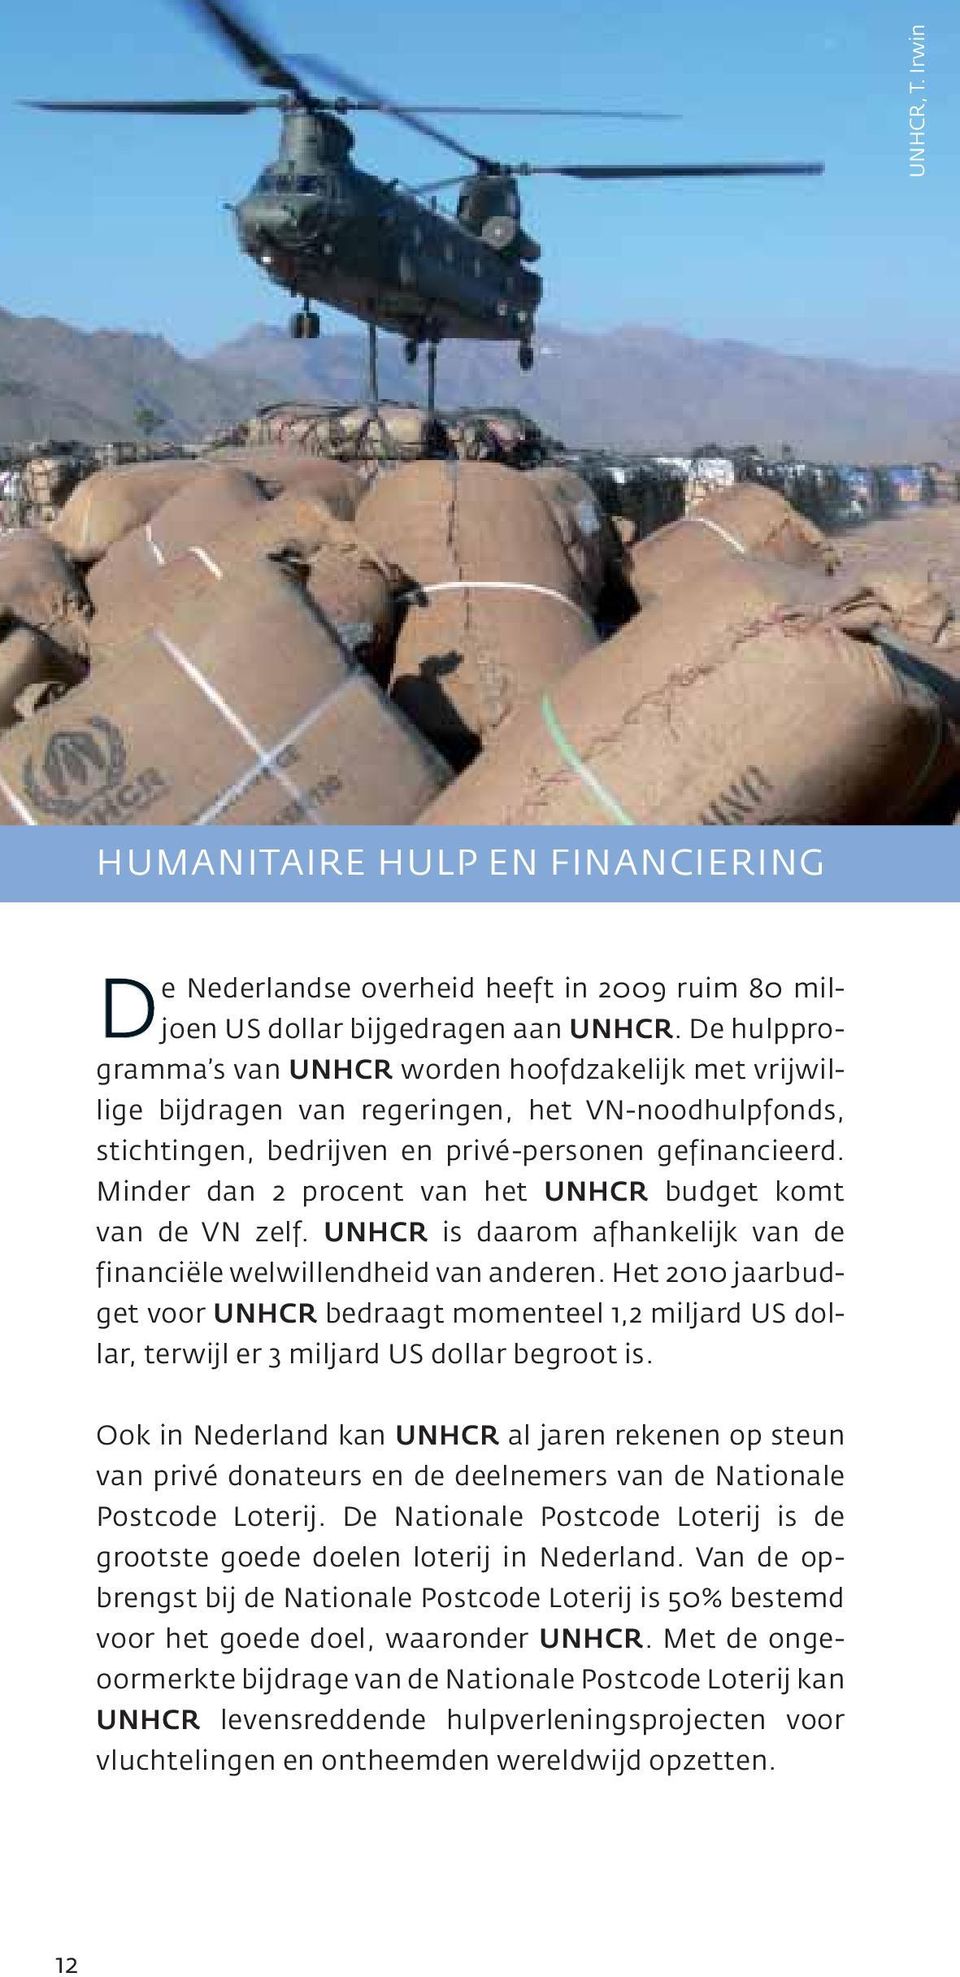 Minder dan 2 procent van het UNHCR budget komt van de VN zelf. UNHCR is daarom afhankelijk van de financiële welwillendheid van anderen.